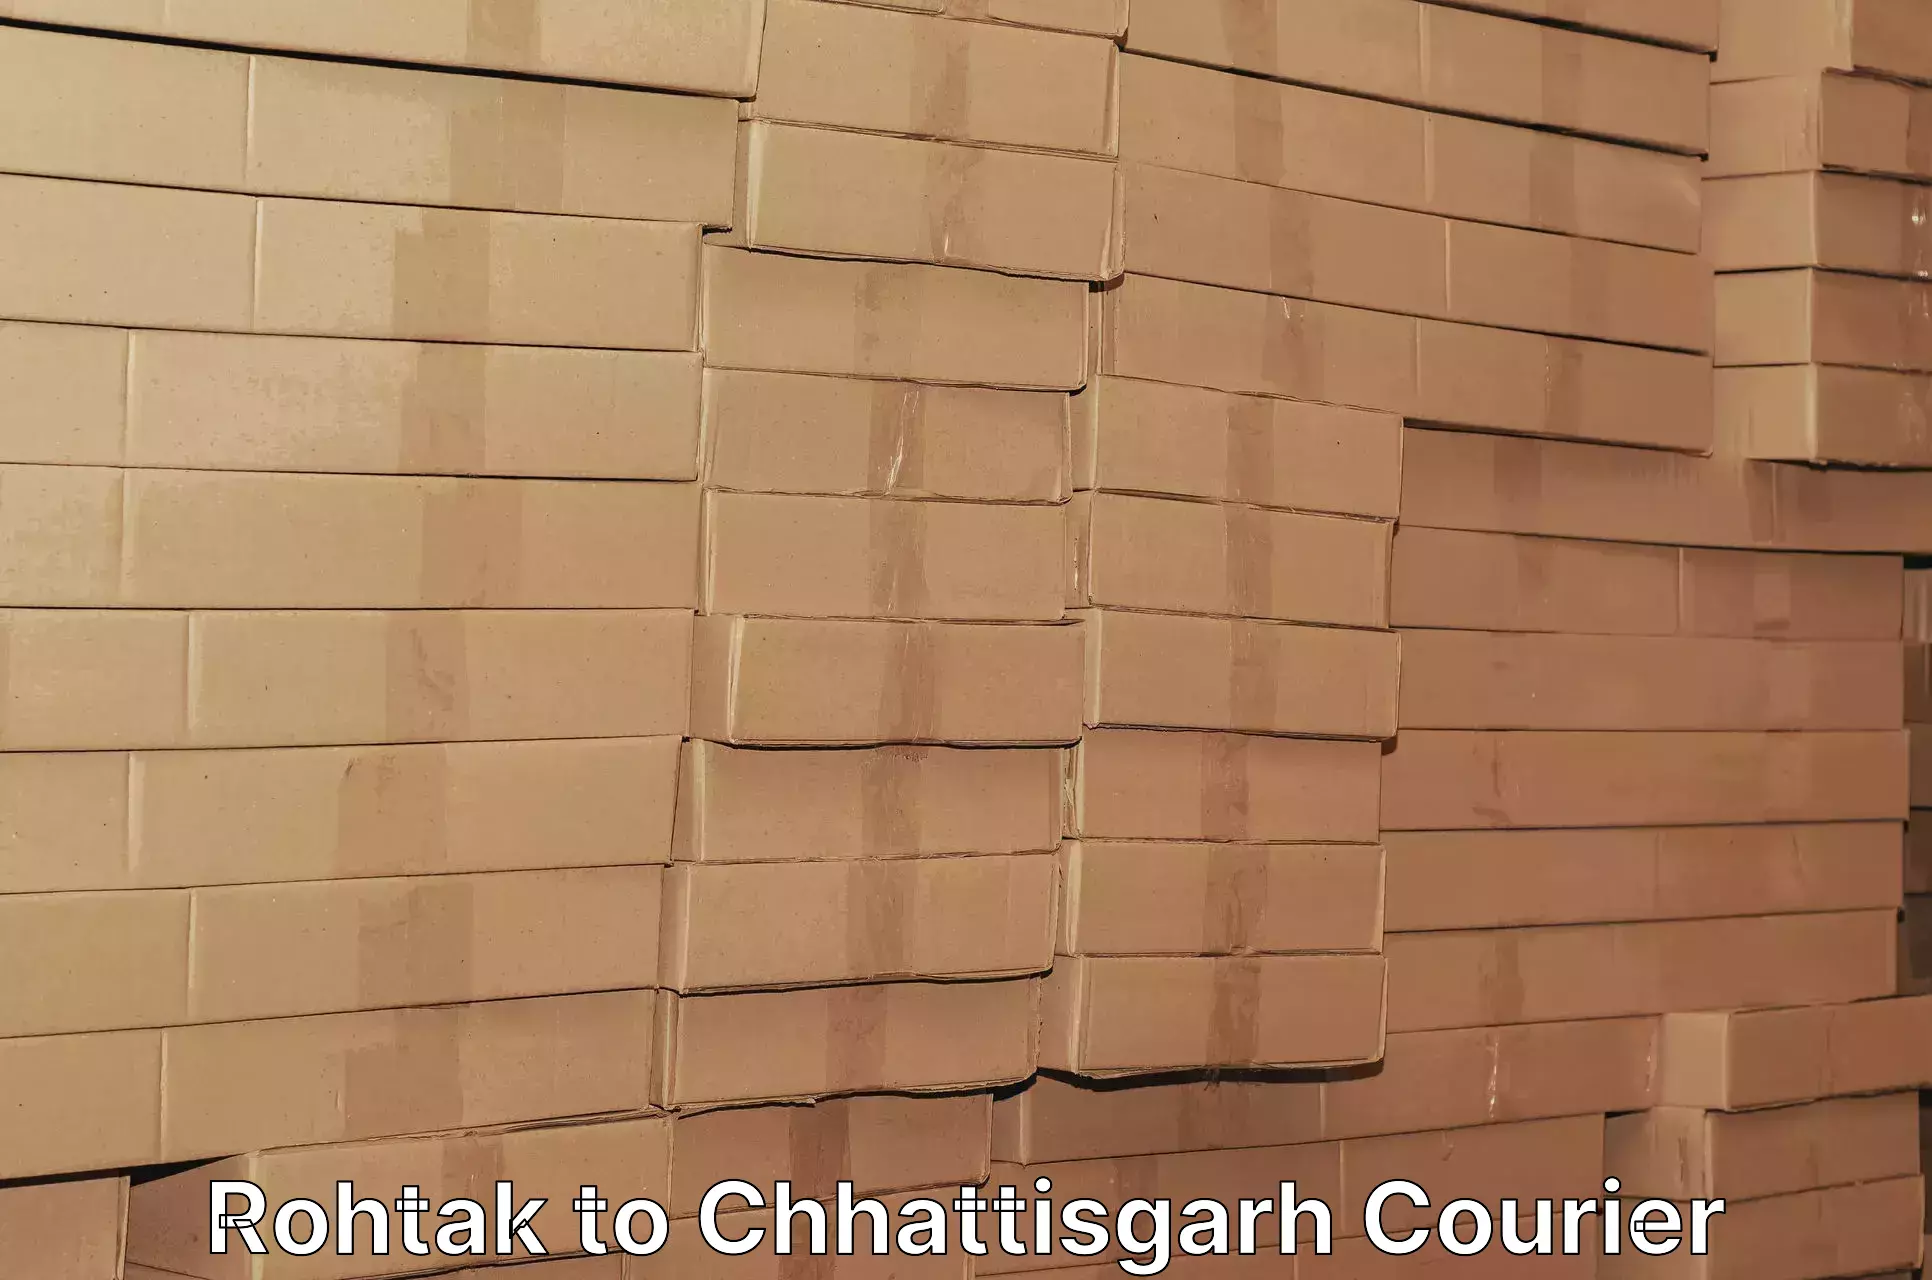 Quick dispatch service Rohtak to Chhattisgarh